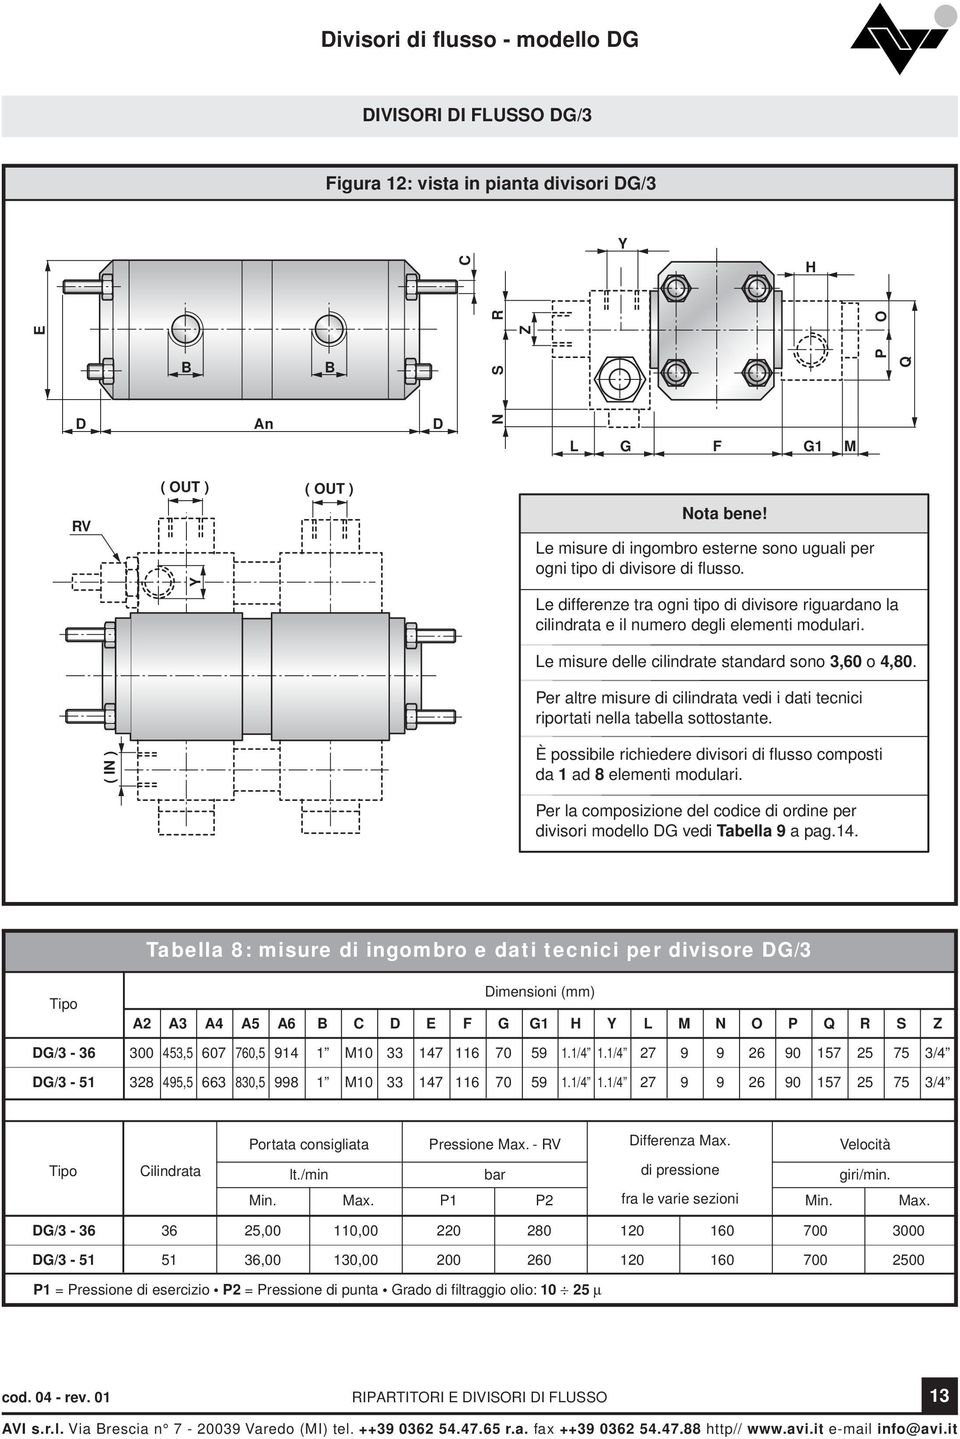 Le misure delle cilindrate standard sono 3,60 o 4,80. Per altre misure di cilindrata vedi i dati tecnici riportati nella tabella sottostante.